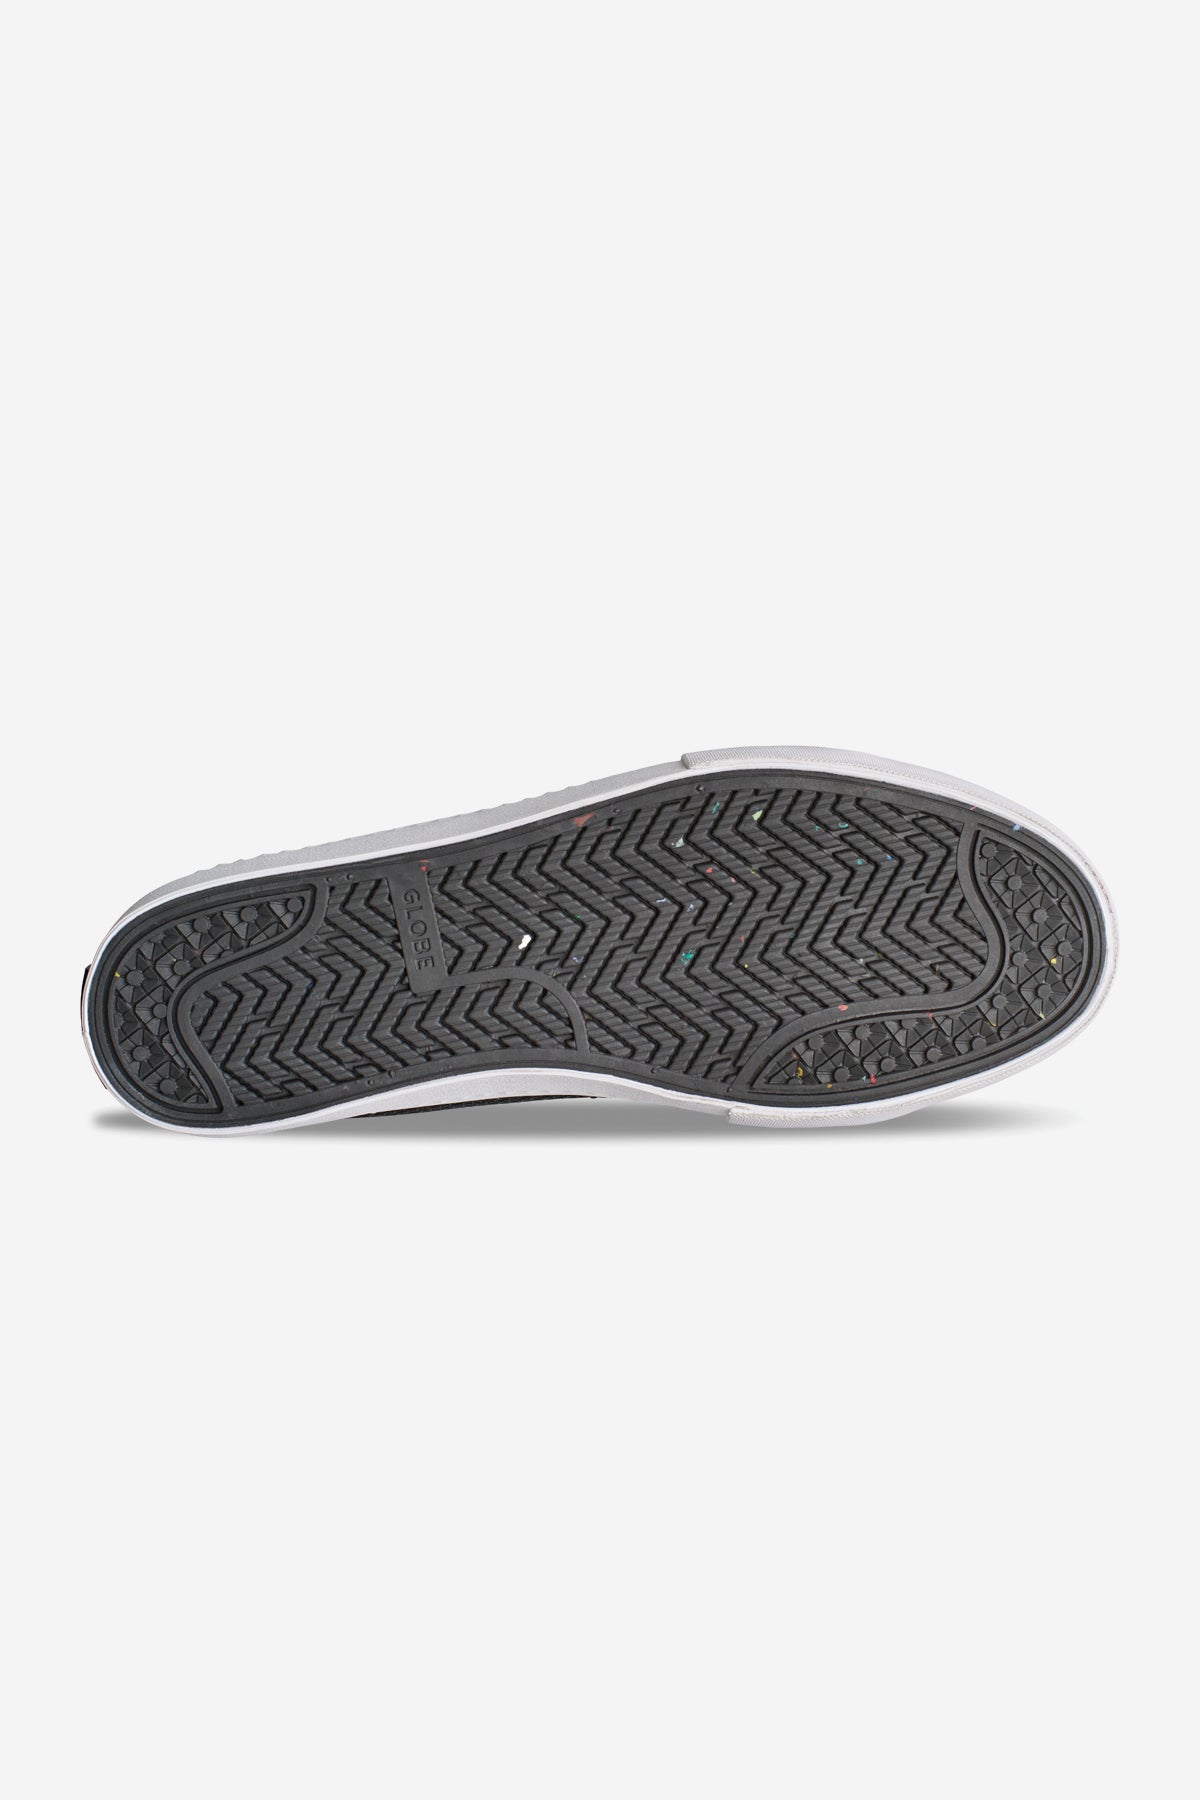 Globe - La Knit - Black/White - skateboard Zapatos